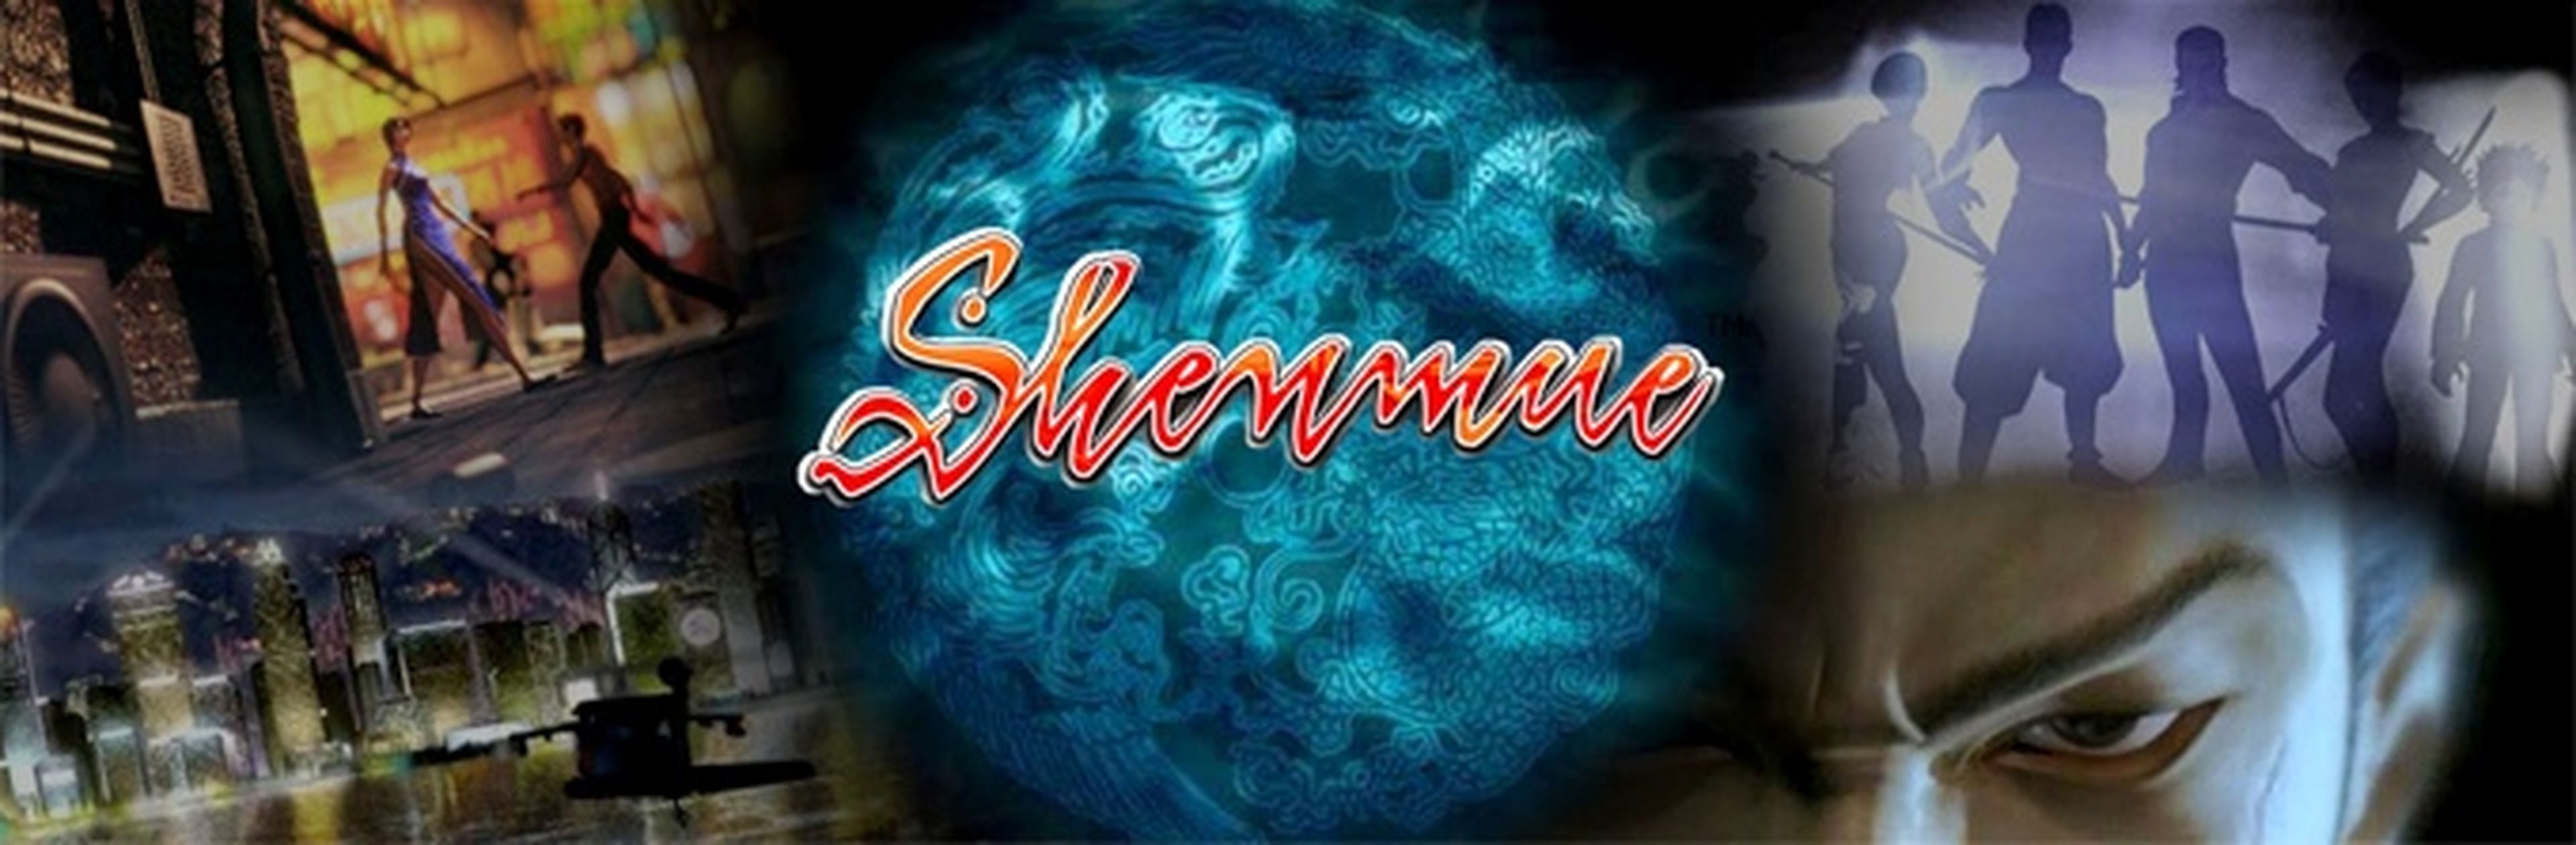 Reportaje de Shenmue 3 y su Kickstarter